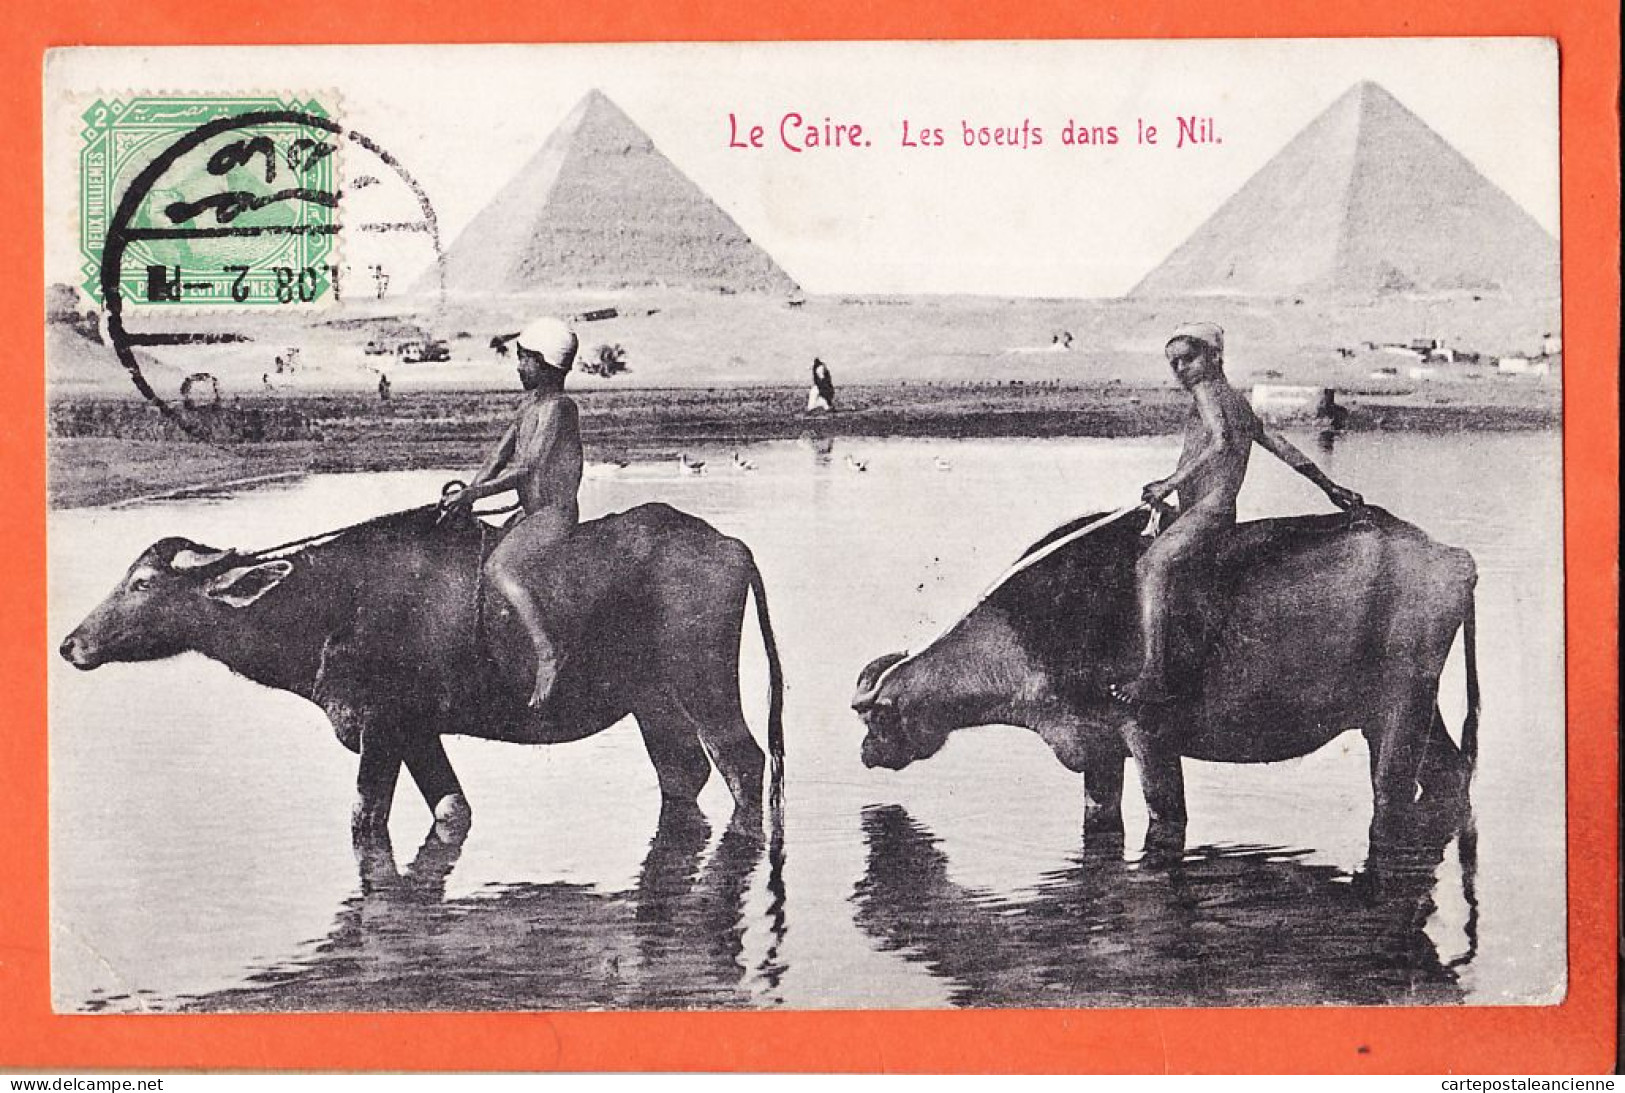 21973 / ⭐ ◉ LE CAIRE Egypte ◉  Boeufs Dans NIL Buffles  2 Pyramides GIZEH 1908 ◉ Papeterie CARTOSPORT Max RUDMANN  - Cairo